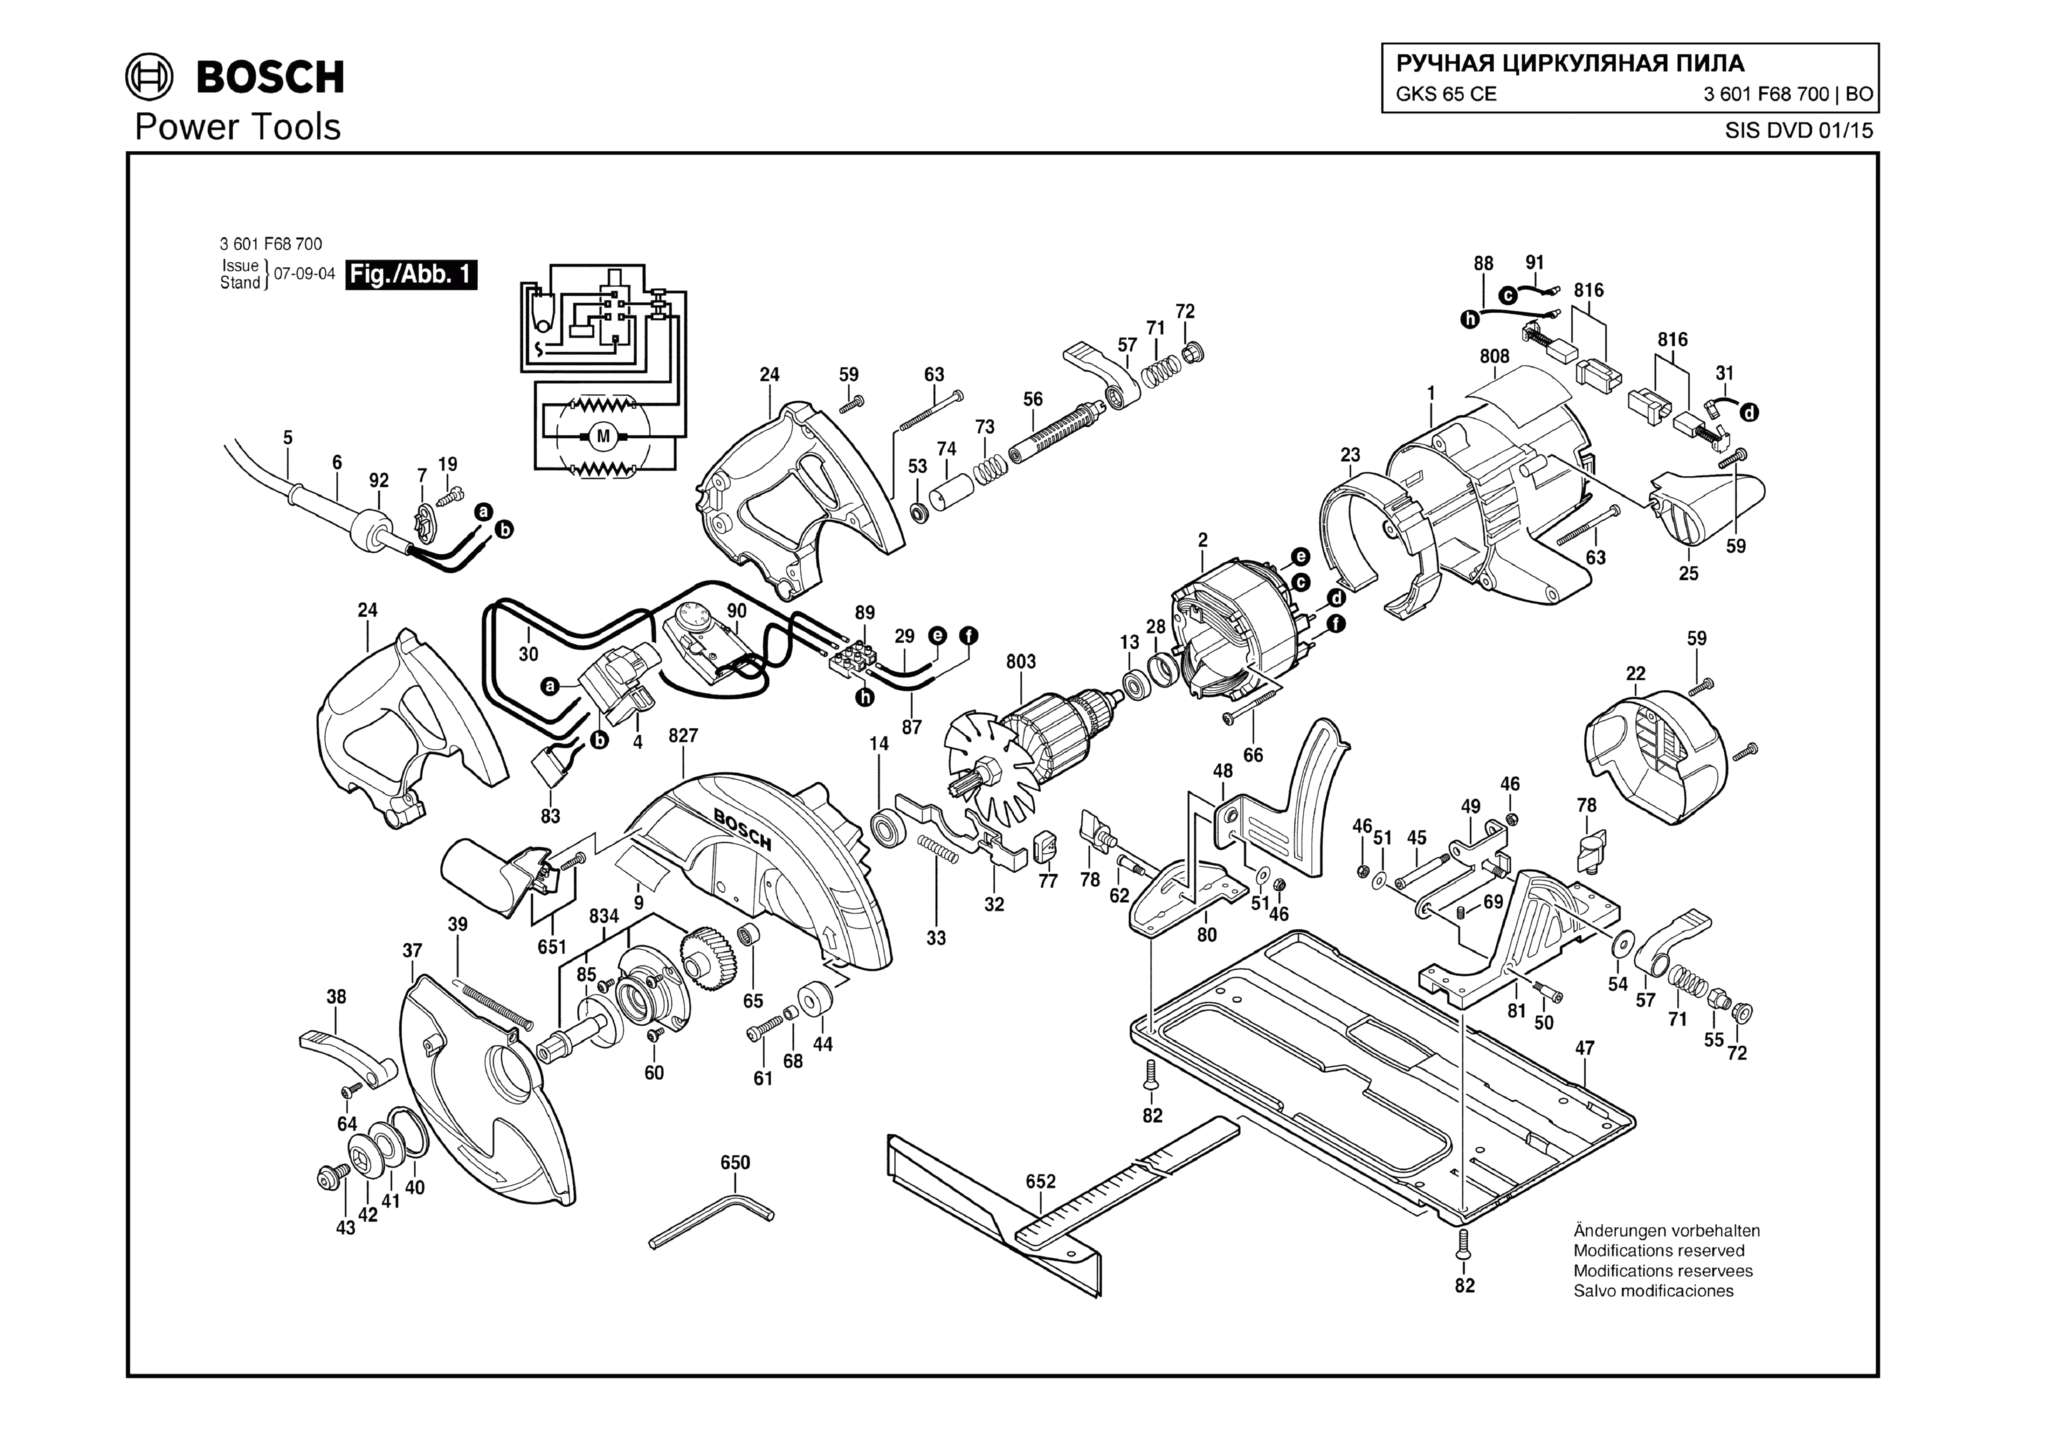 Запчасти, схема и деталировка Bosch GKS 65 CE (ТИП 3601F68700)